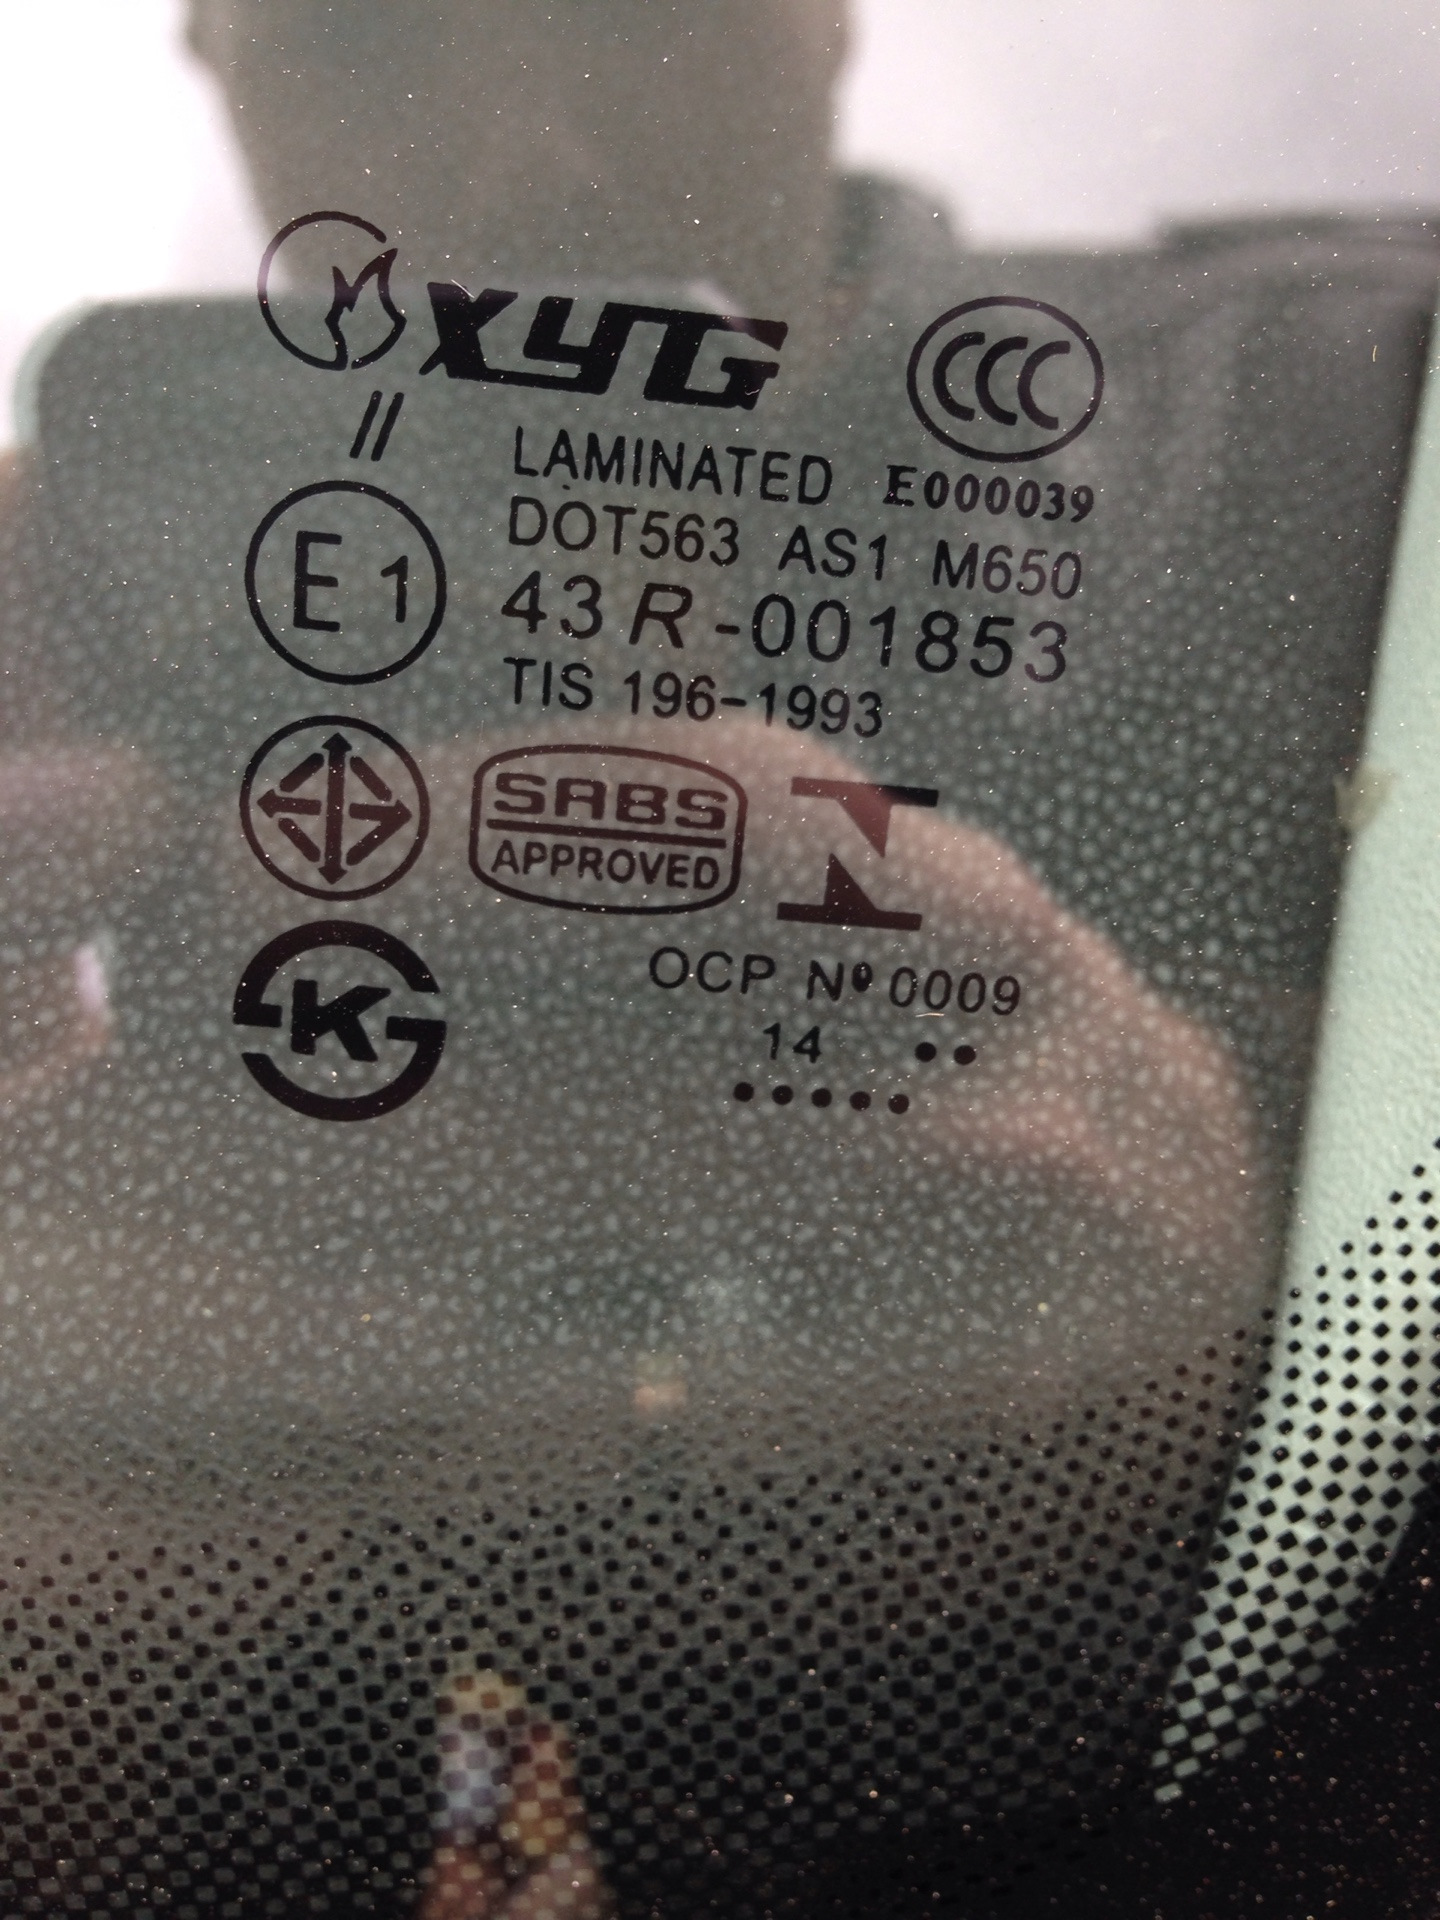 Xyg стекло производитель. Атермальное лобовое стекло XYG. Лобовое стекло XYG маркировка. Маркировка атермального стекла XYG. XYG атермальное стекло Subaru.